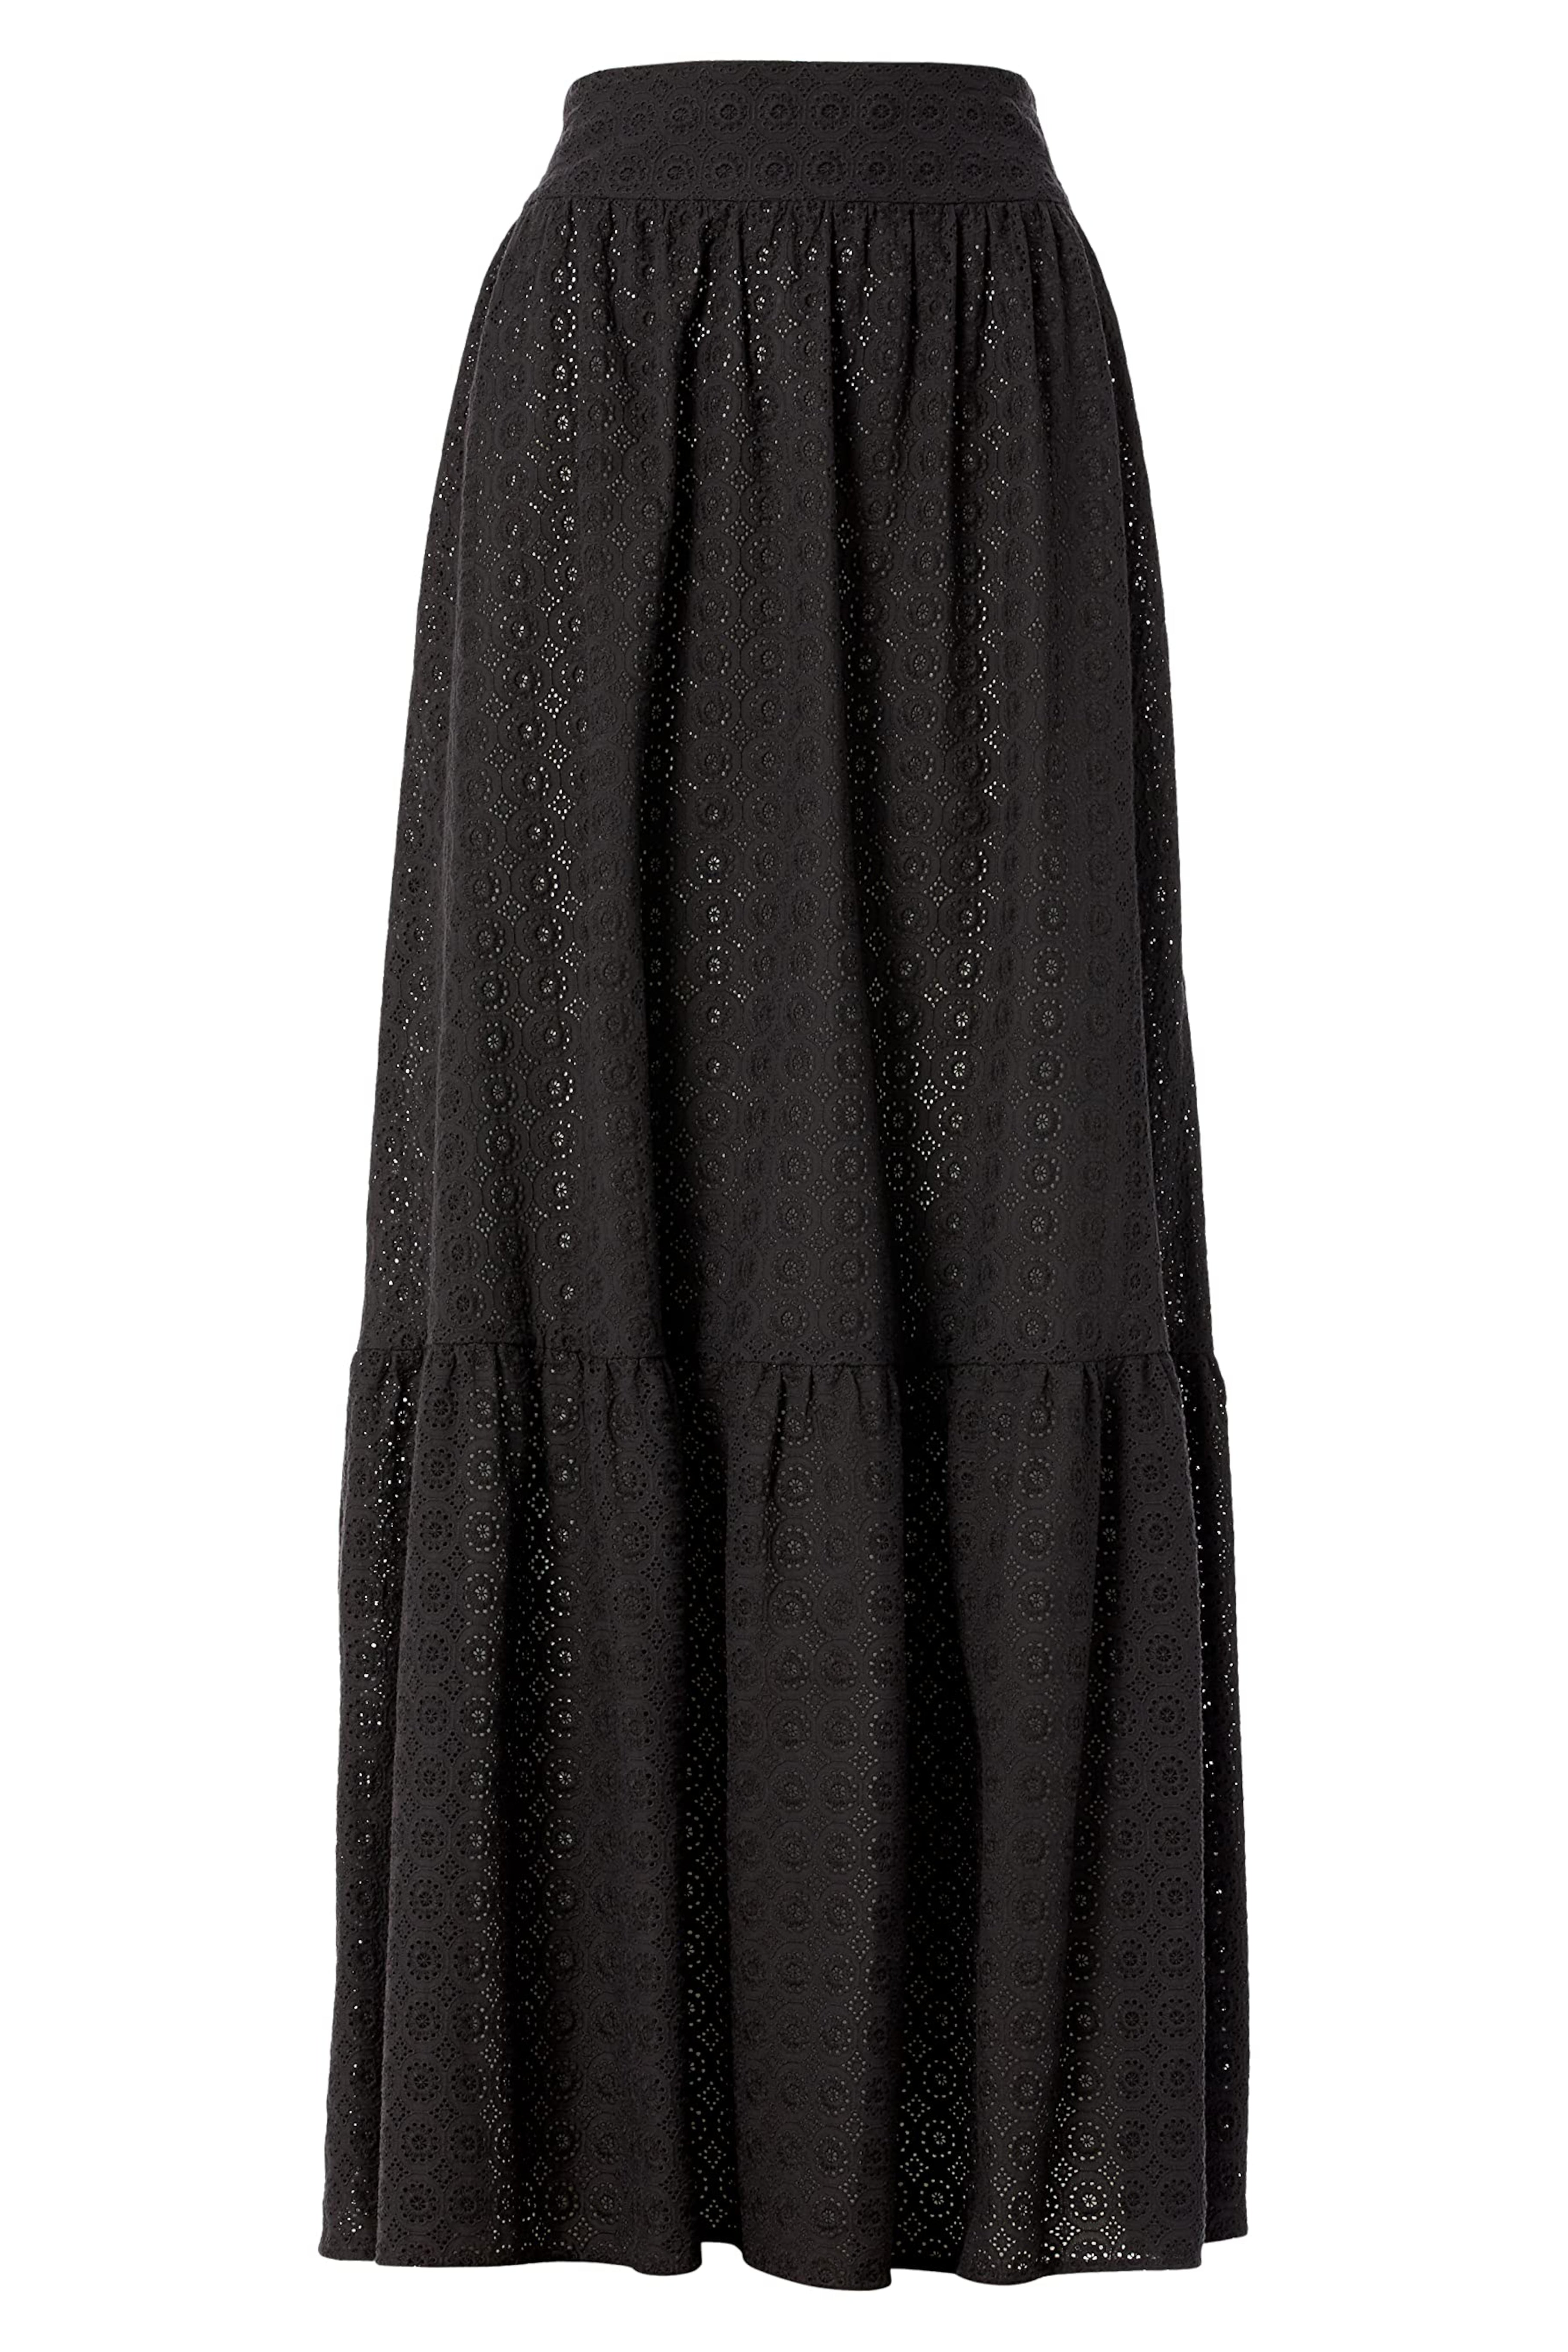 long black skirt - product shot